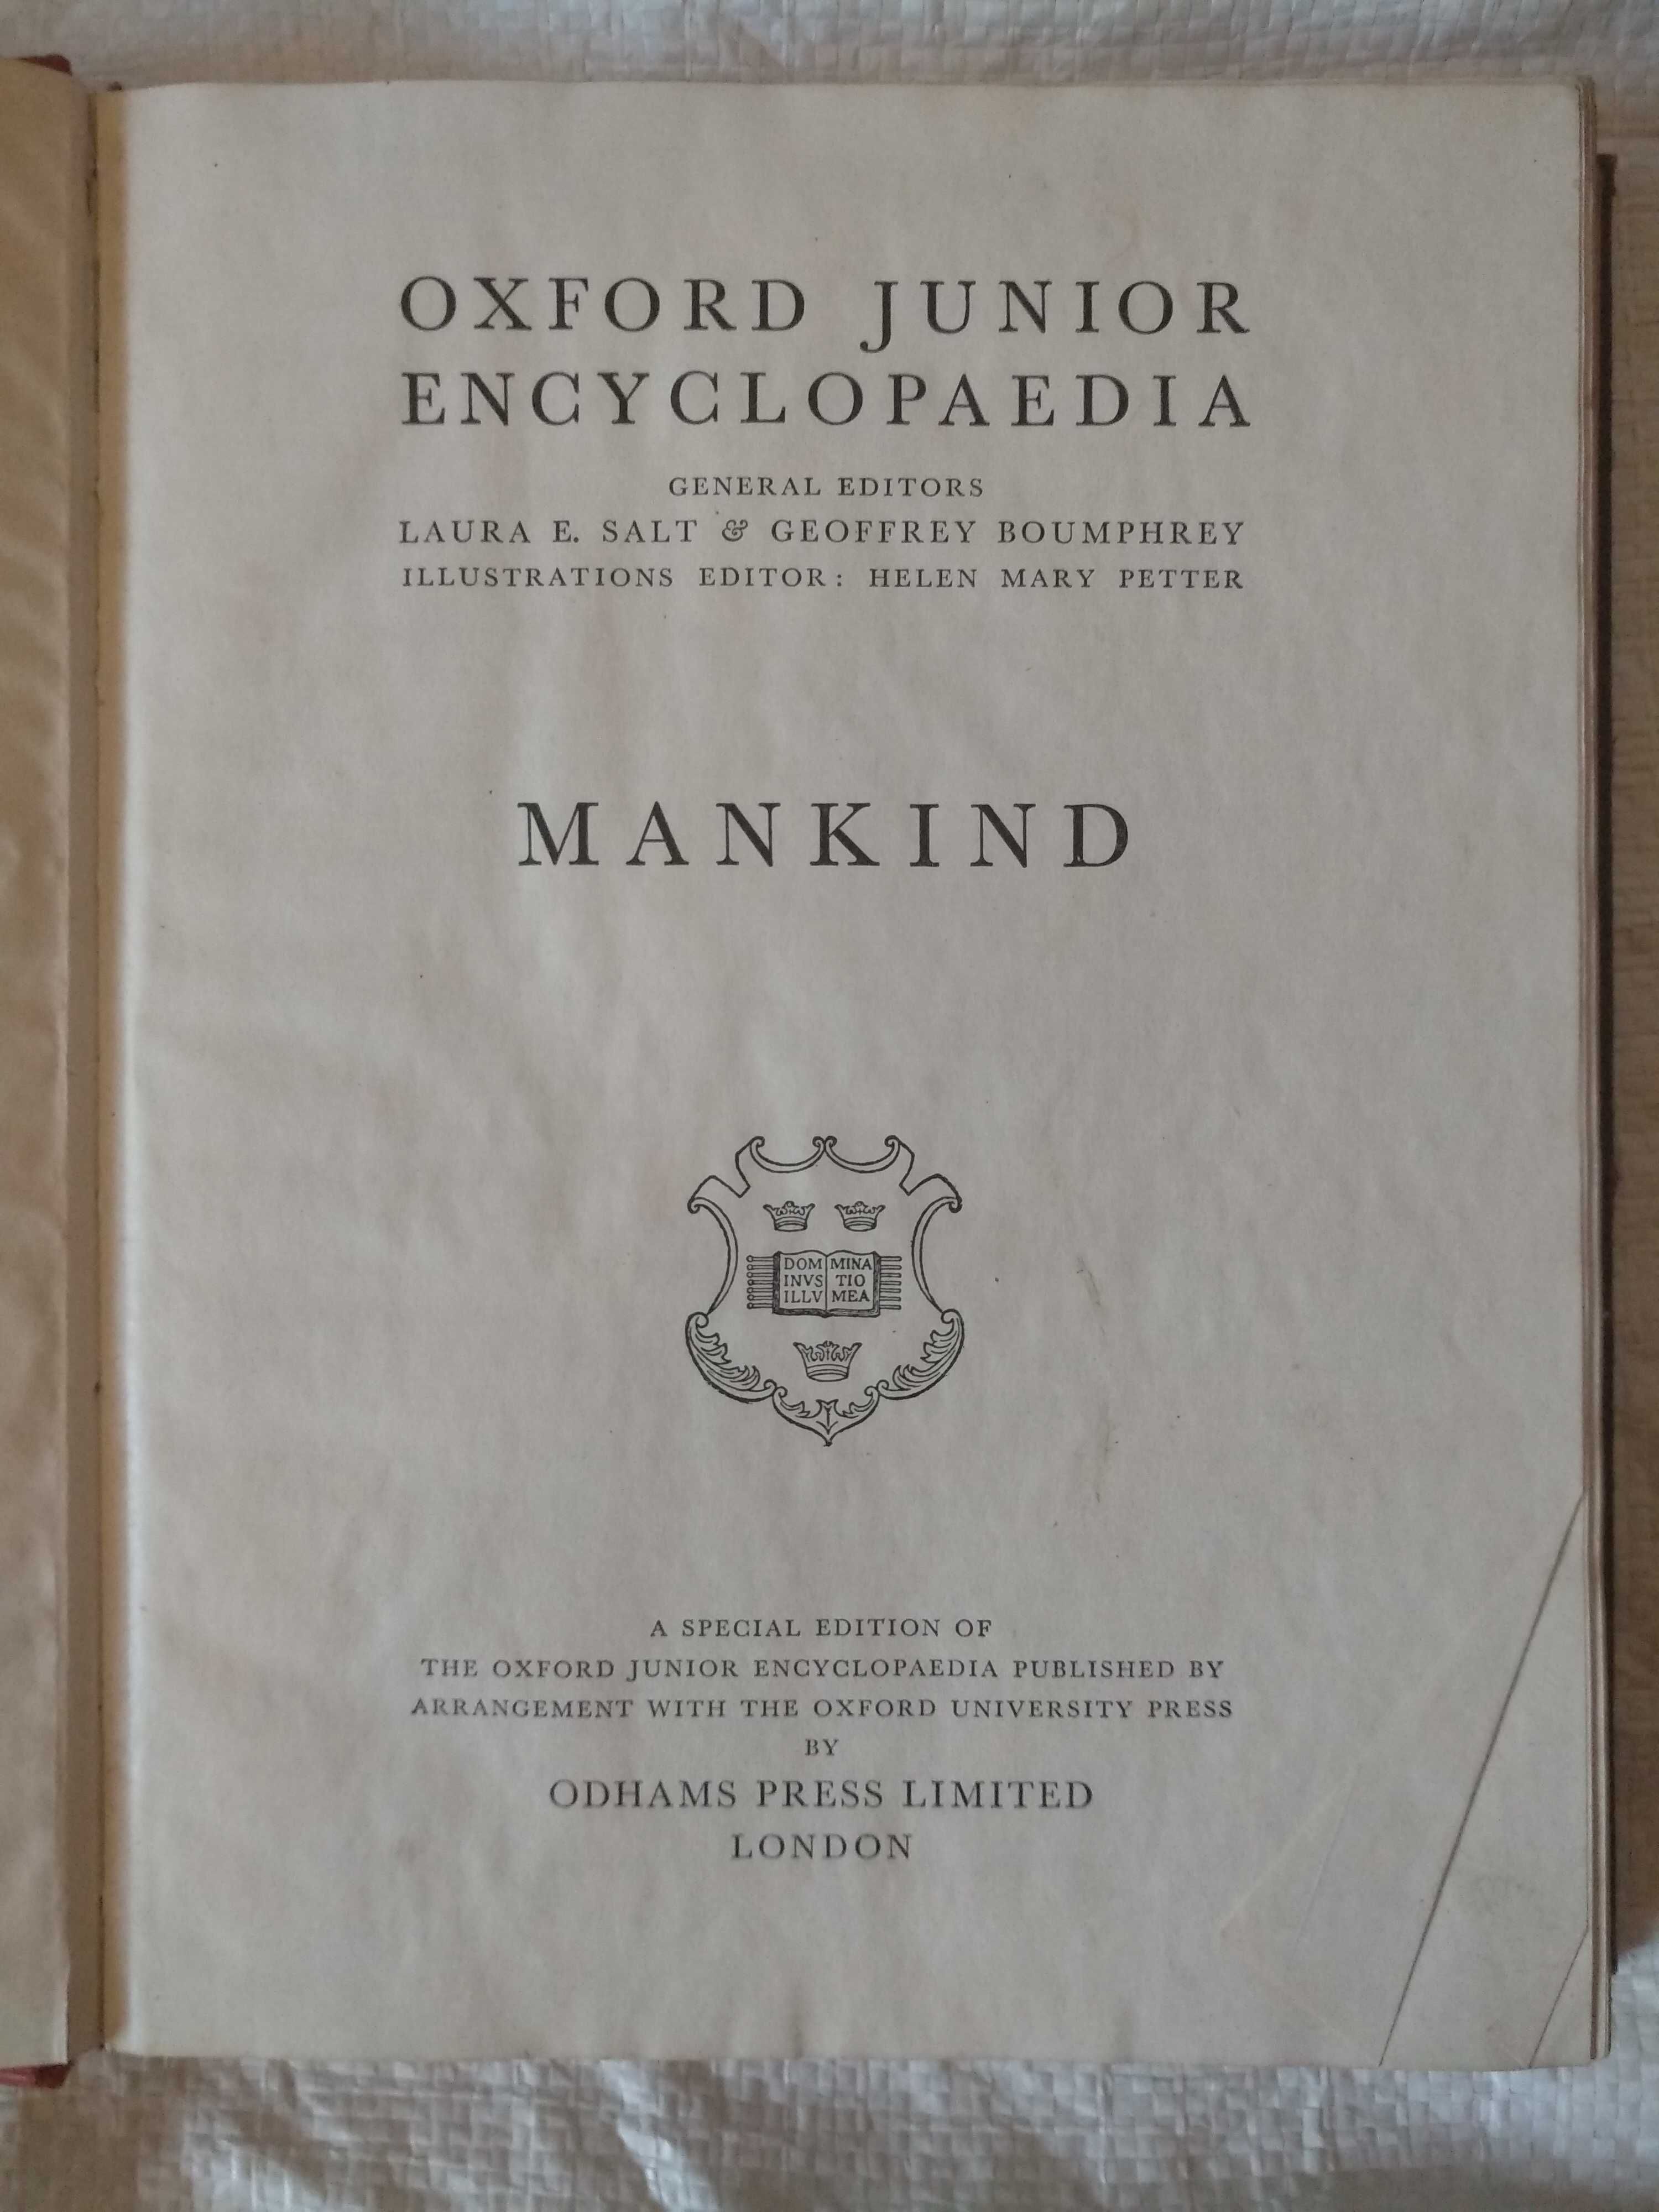 Oxford junior encyclopaedia